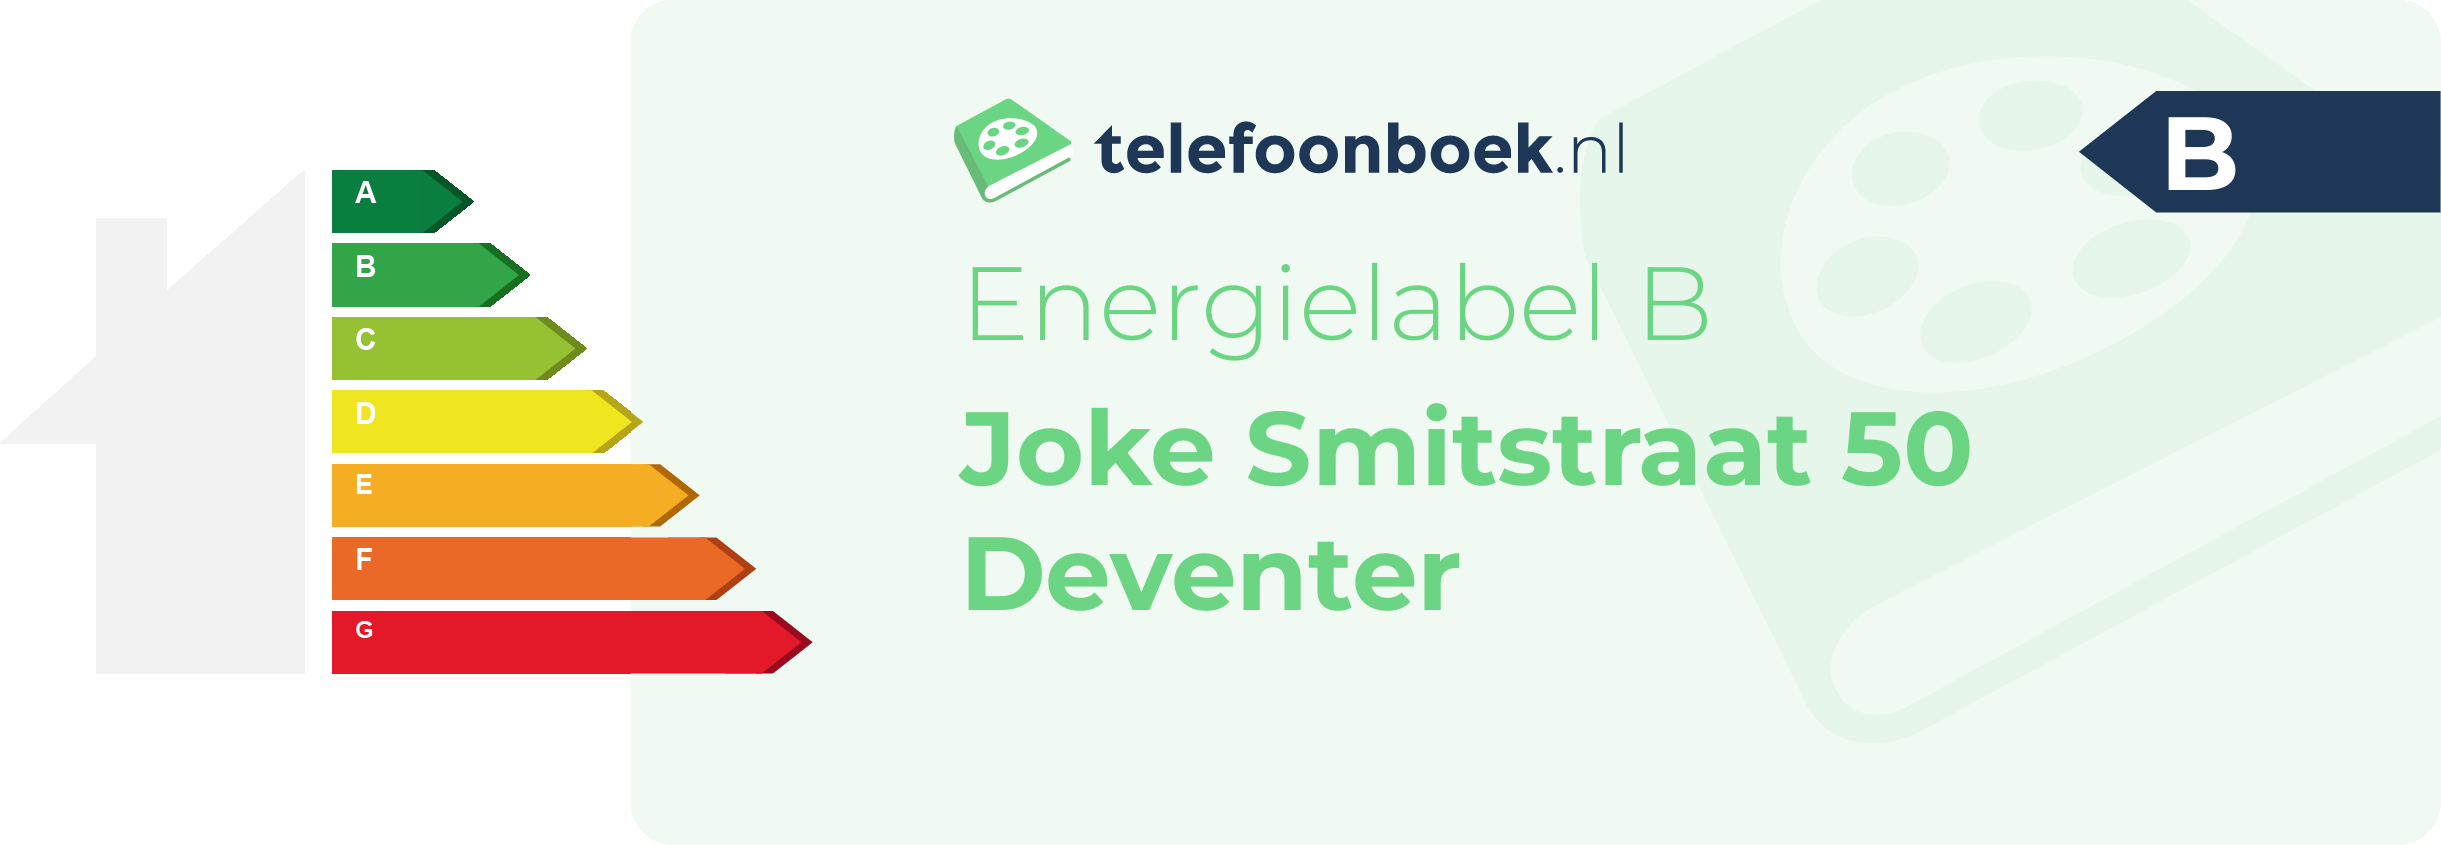 Energielabel Joke Smitstraat 50 Deventer